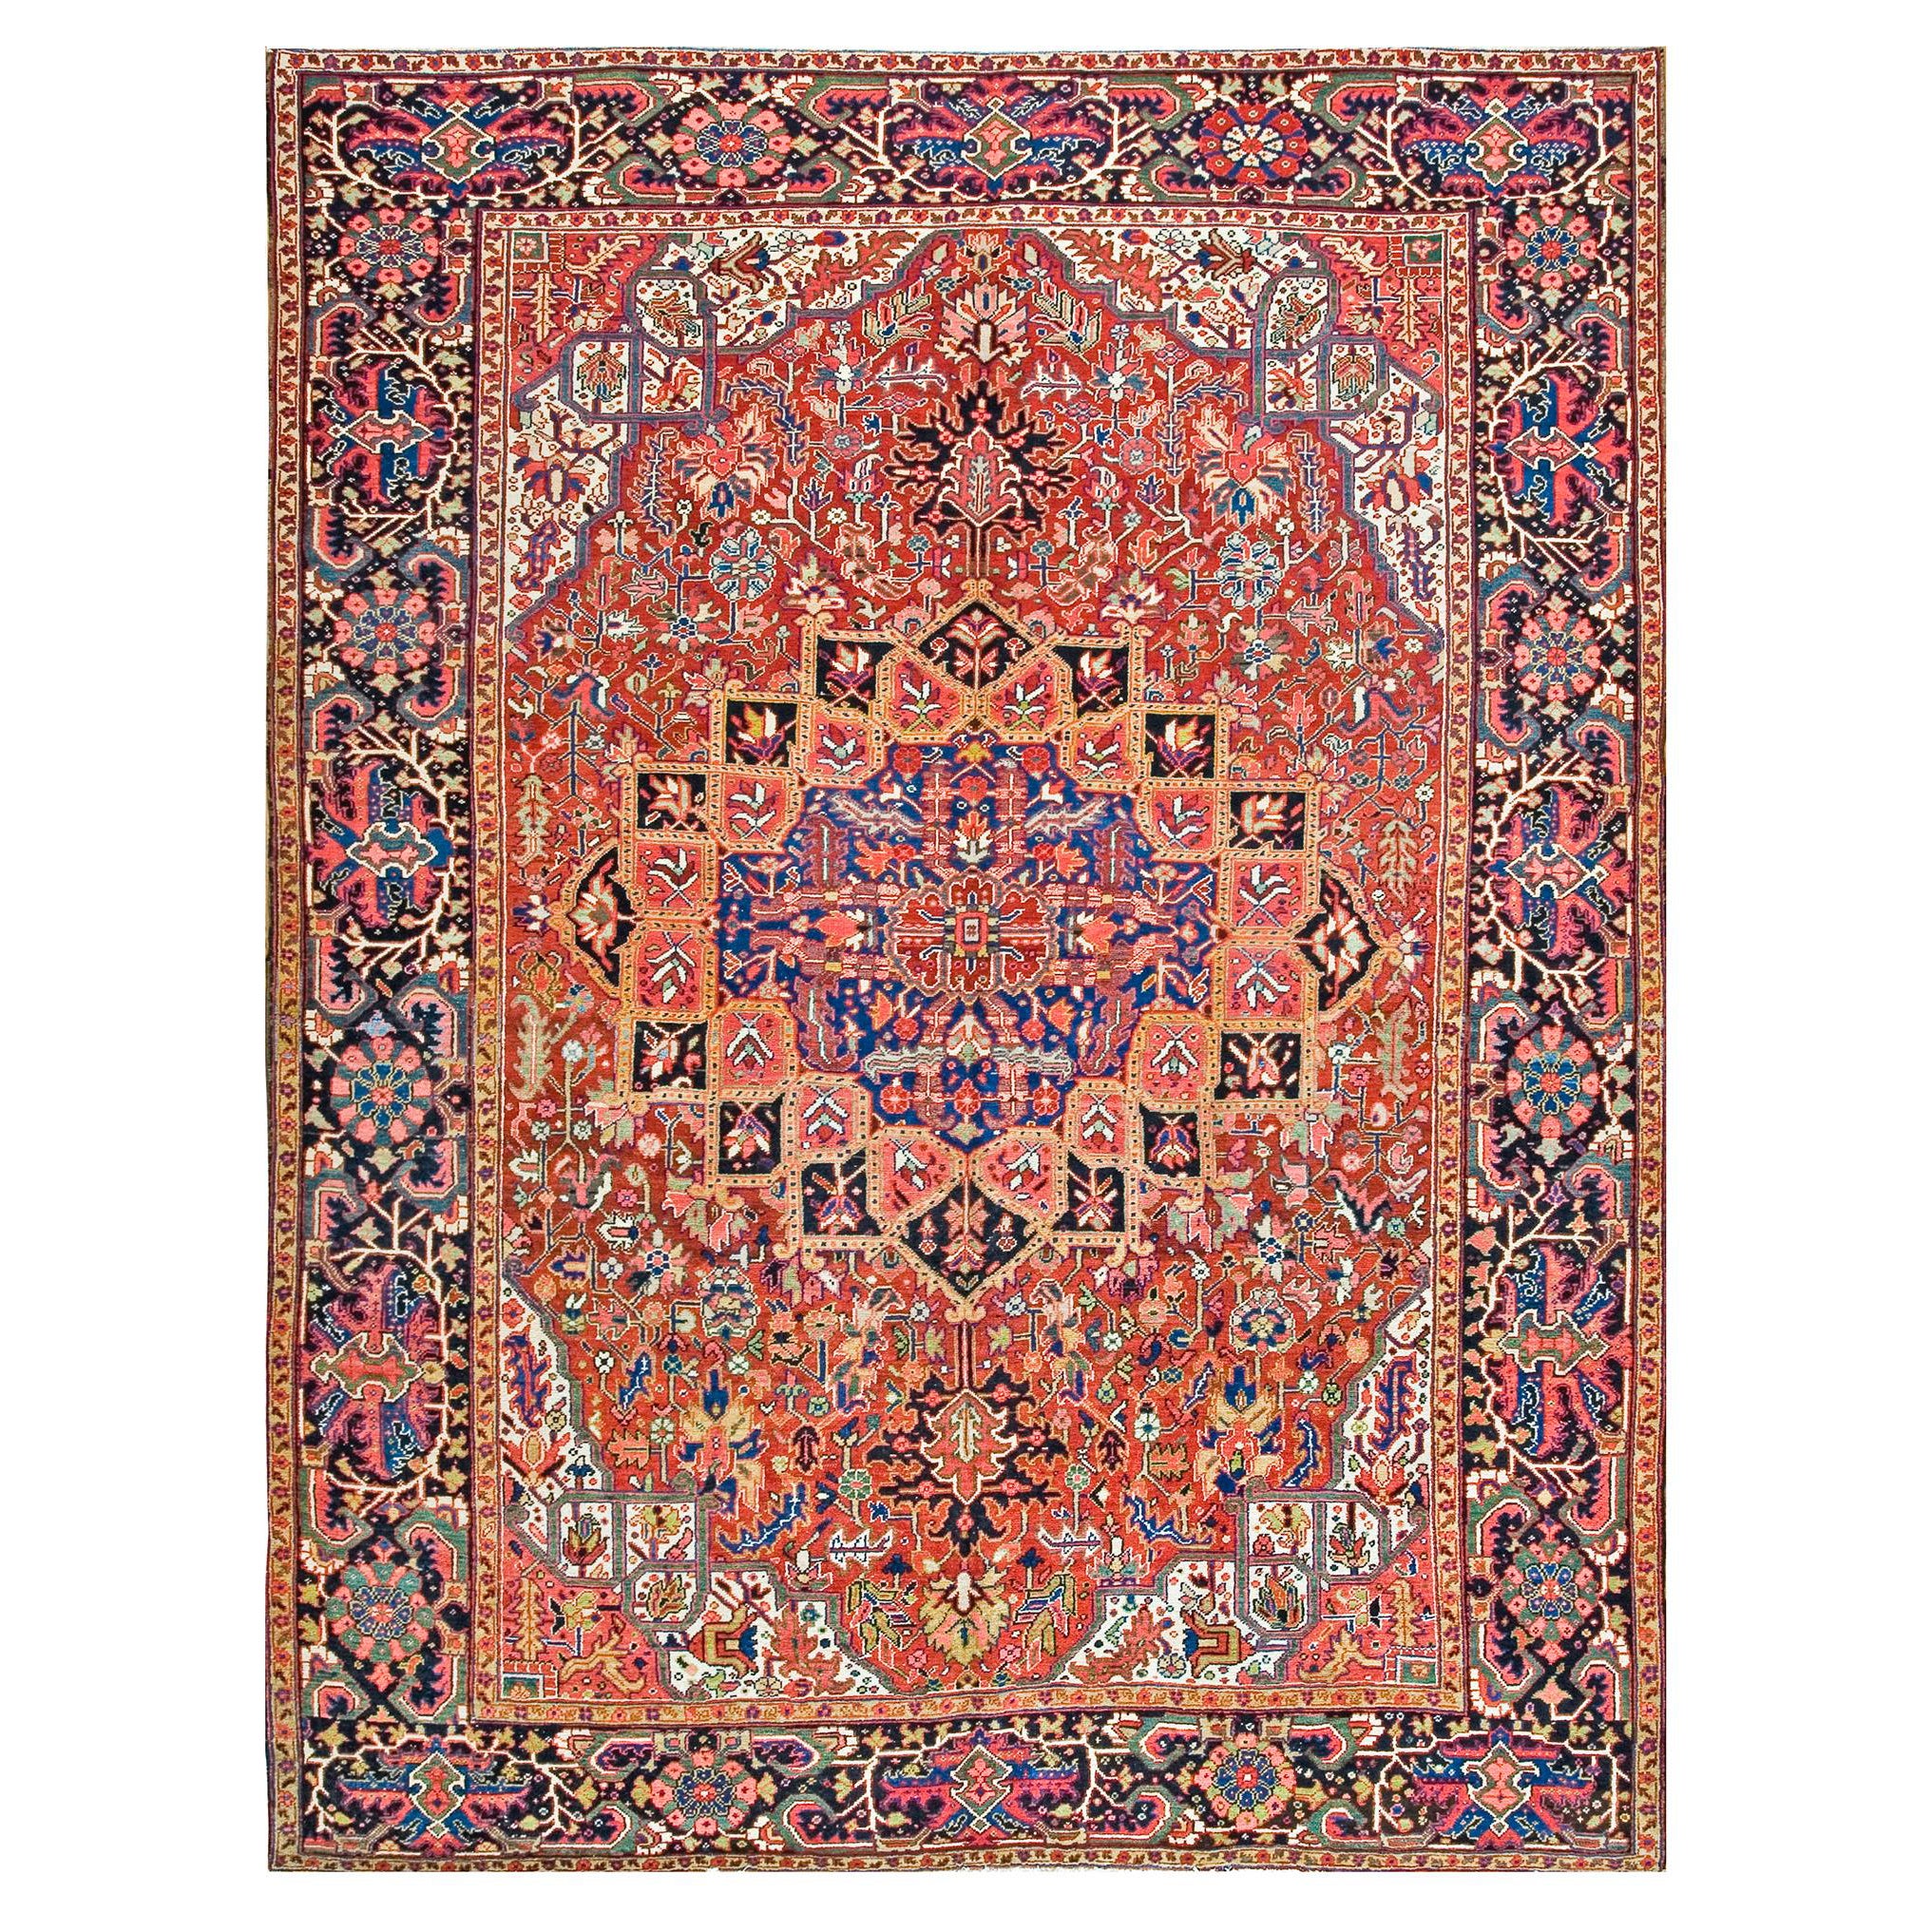 1920s Persian Heriz Carpet ( 9' x 11' 11" - 275 x 363 cm ) For Sale